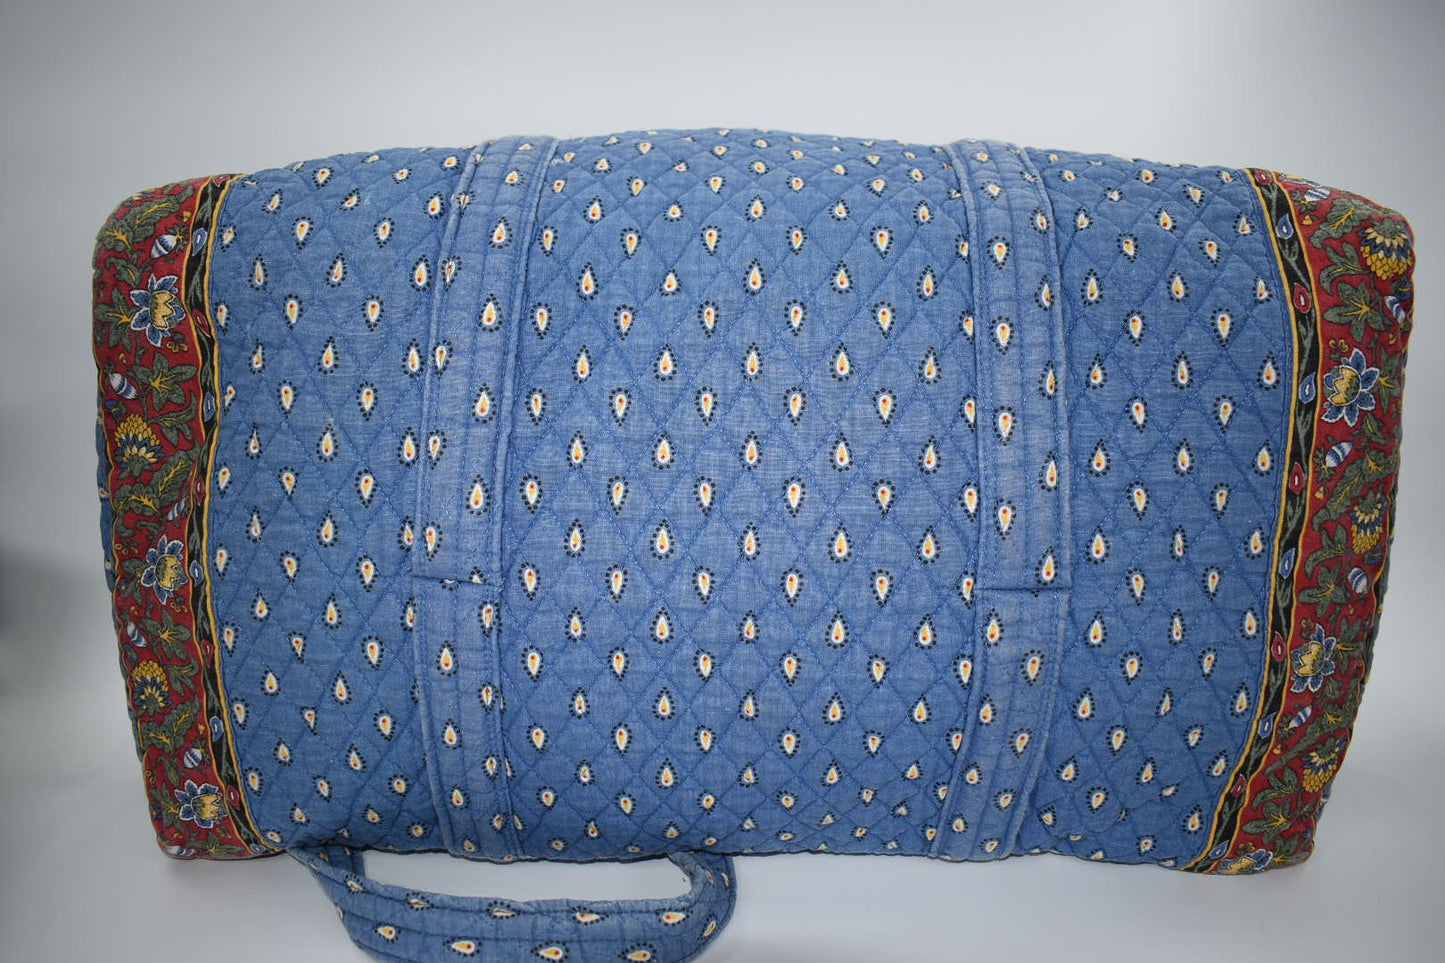 Vera Bradley XL Duffel Bag in "French Blue -1999" Pattern